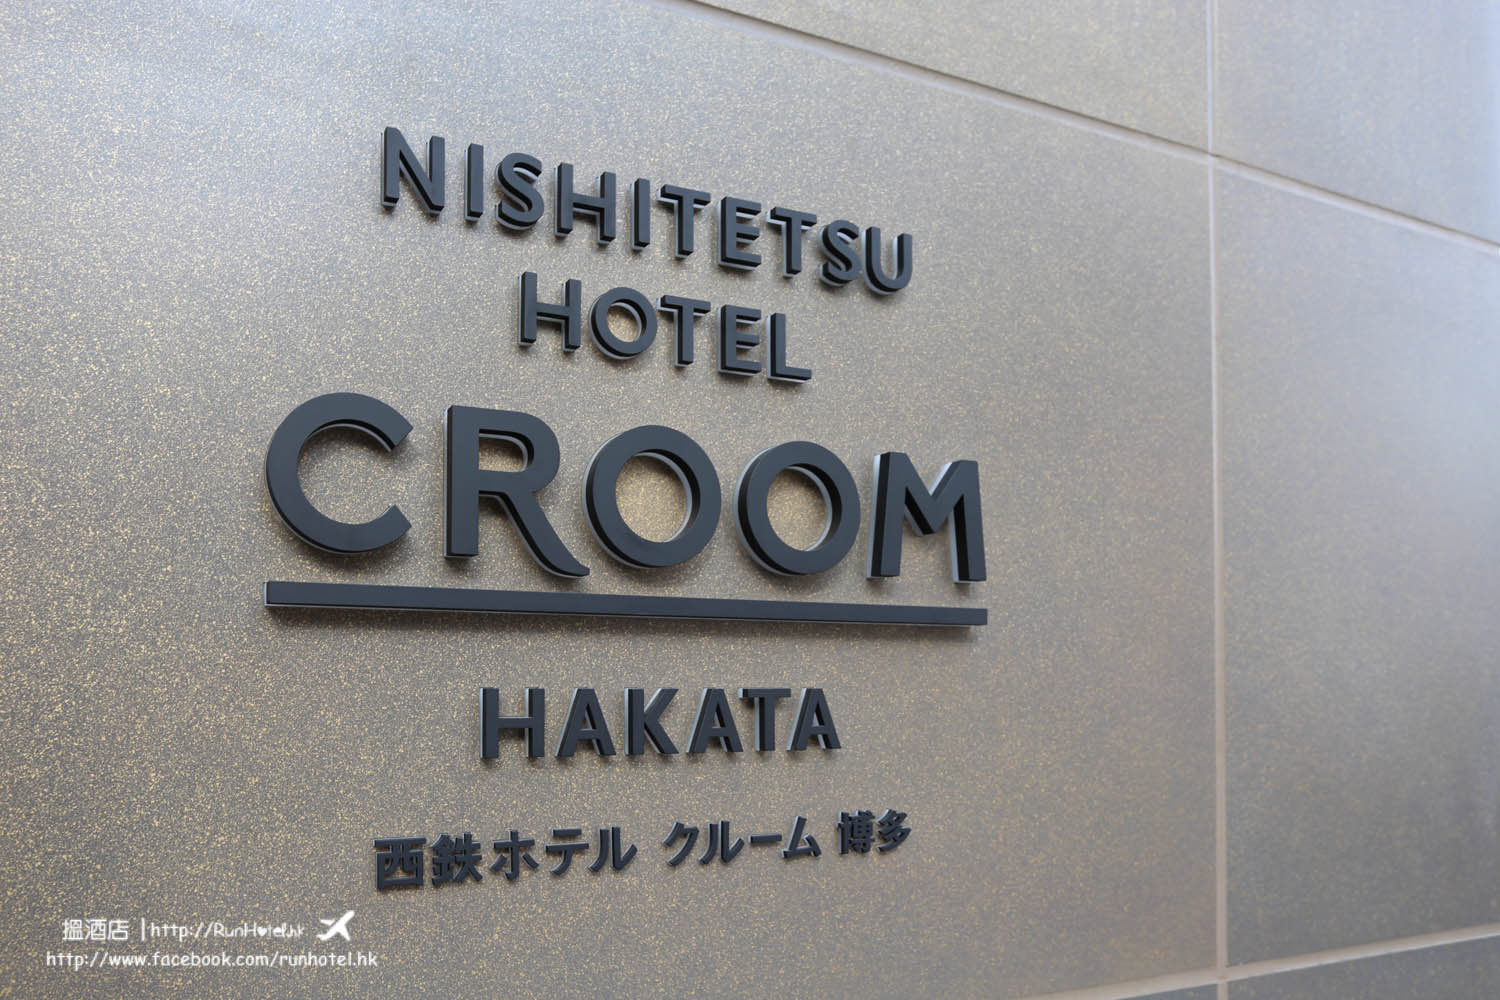 Nishitetsu Hotel CROOM Hakata (63)